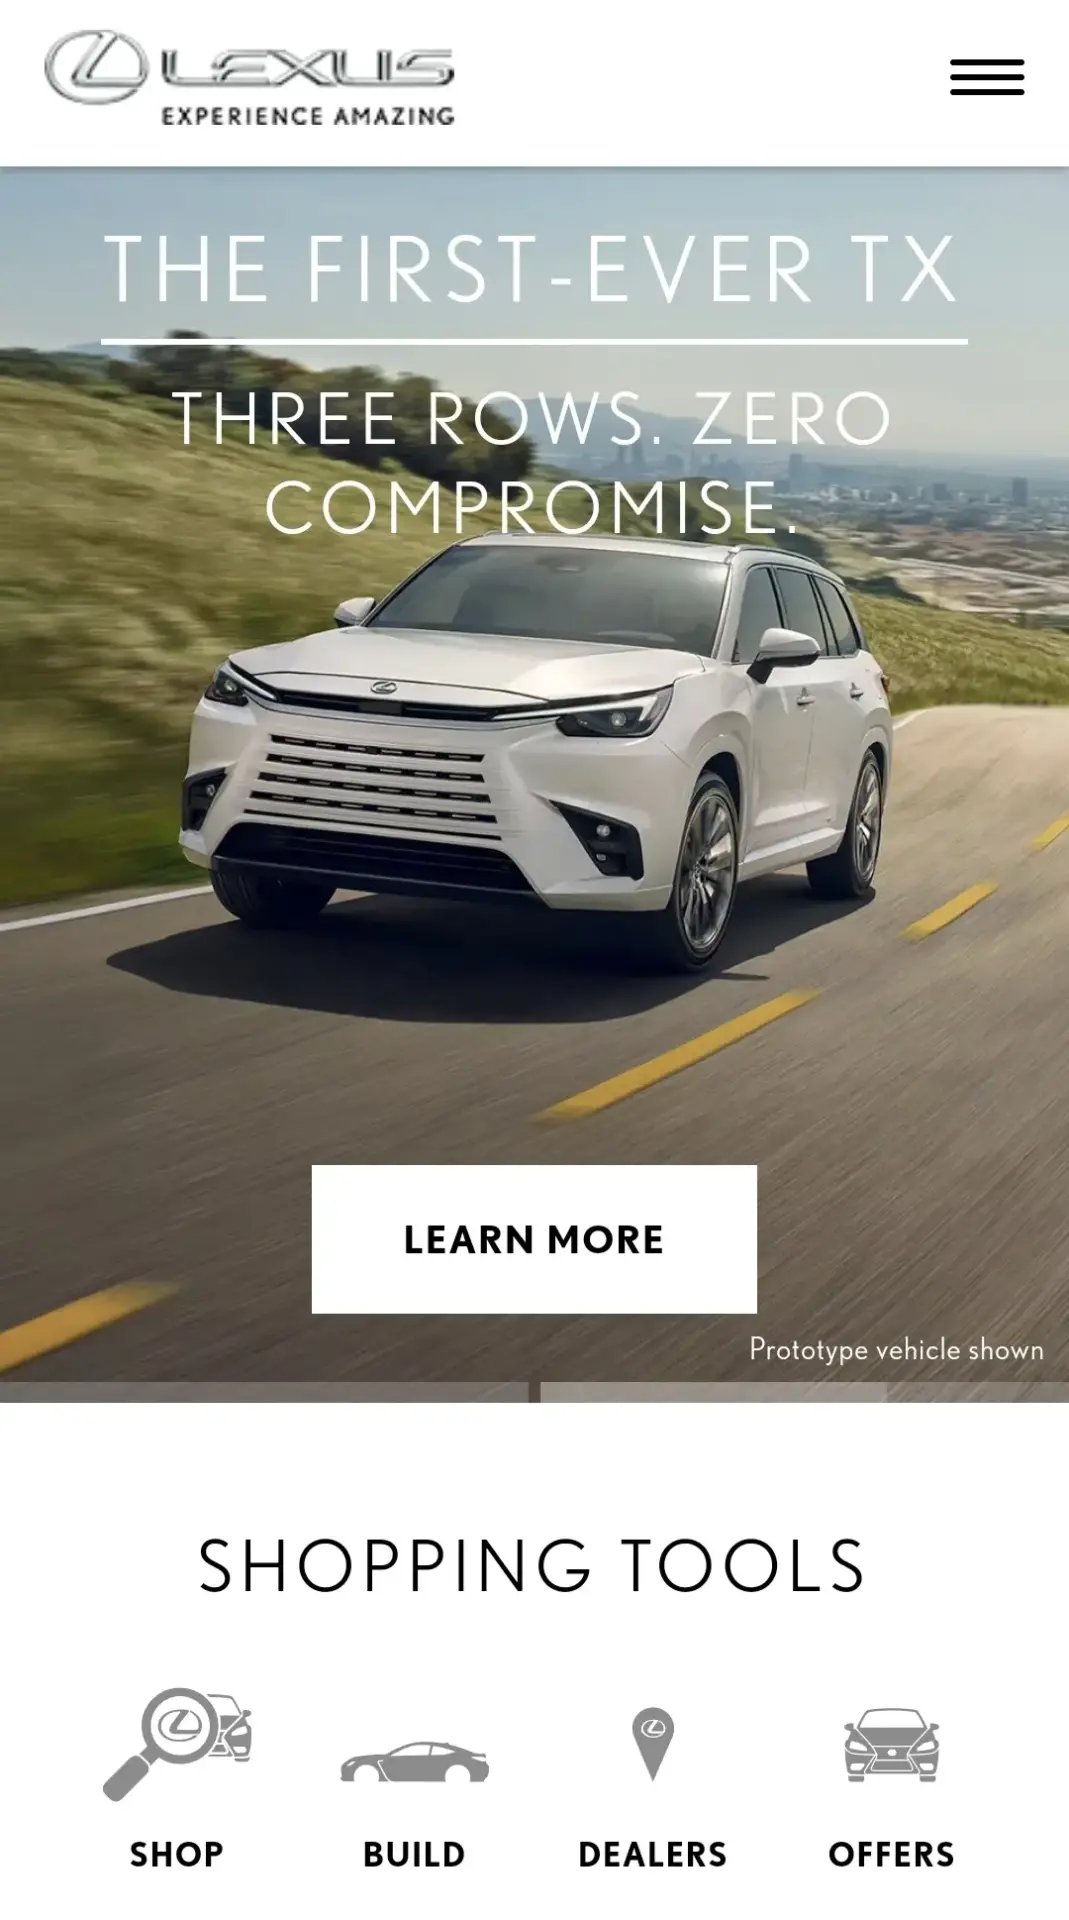 La marque de voitures Lexus a choisit de réaliser un site internet responsive